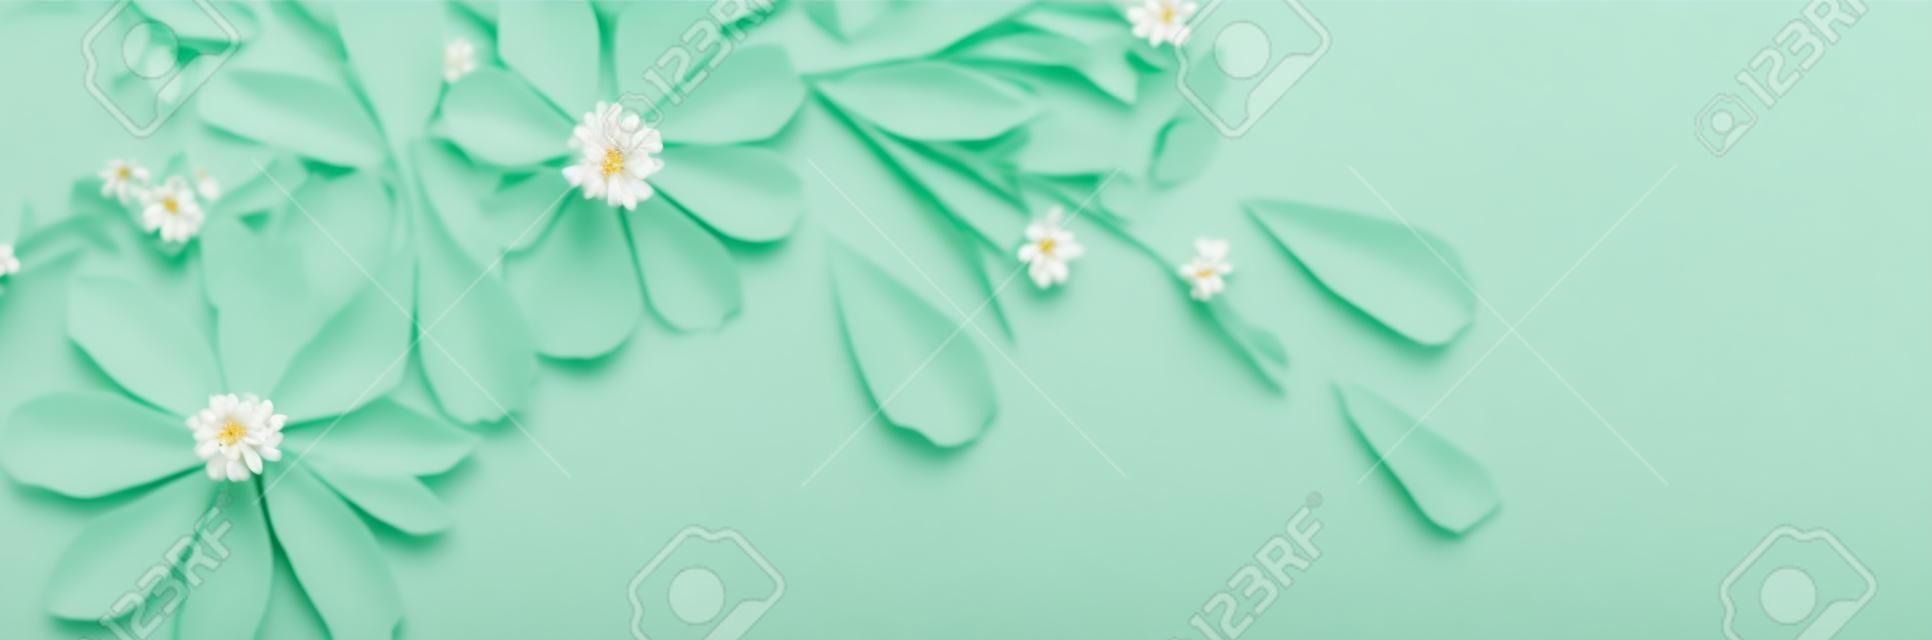 flores blancas sobre fondo de papel verde